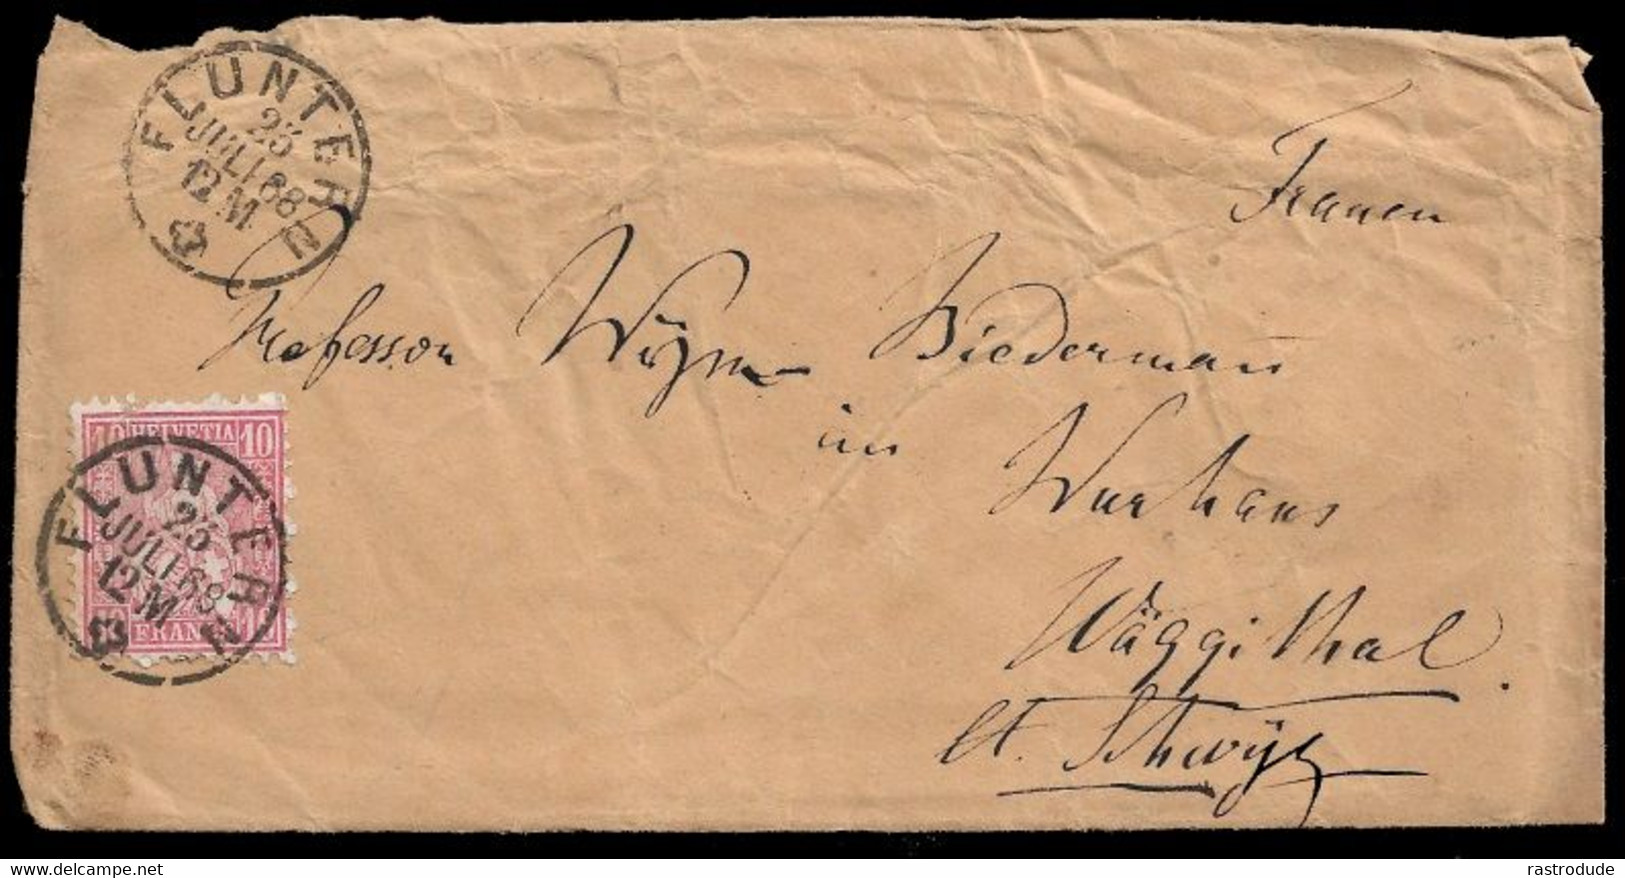 1868, 23 JULI -  SCHWEIZ SUISSE SWITZERLAND - 10Rp BRIEF (SBK 38) - FLUNTERN (ZÜRICH ZH) - Lettres & Documents